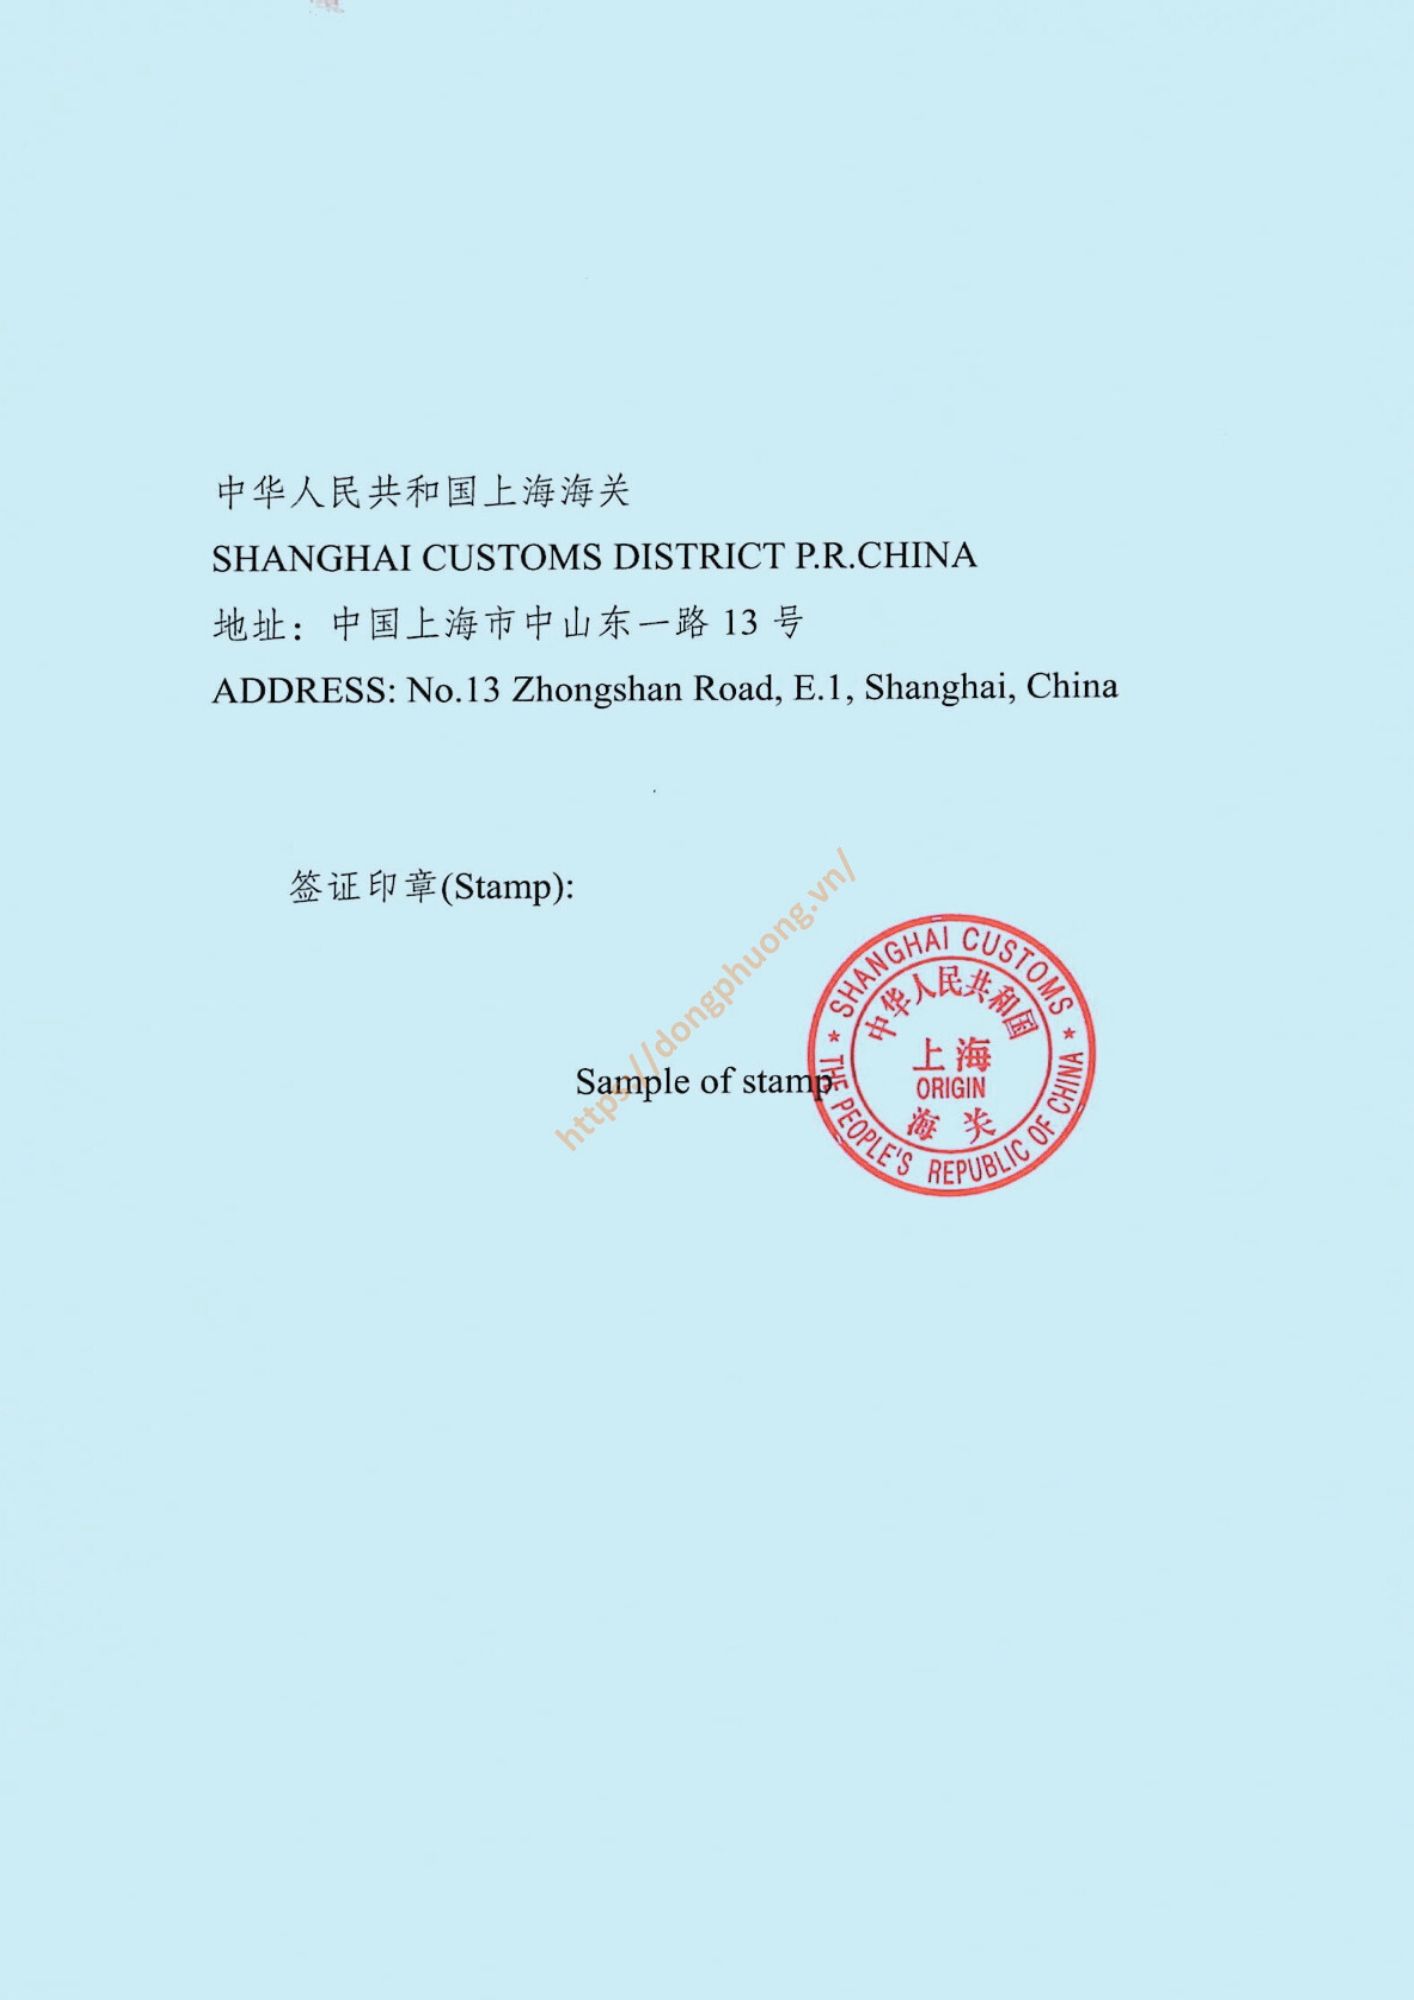 mẫu dấu và chữ ký form E 2024 Shanghai customs